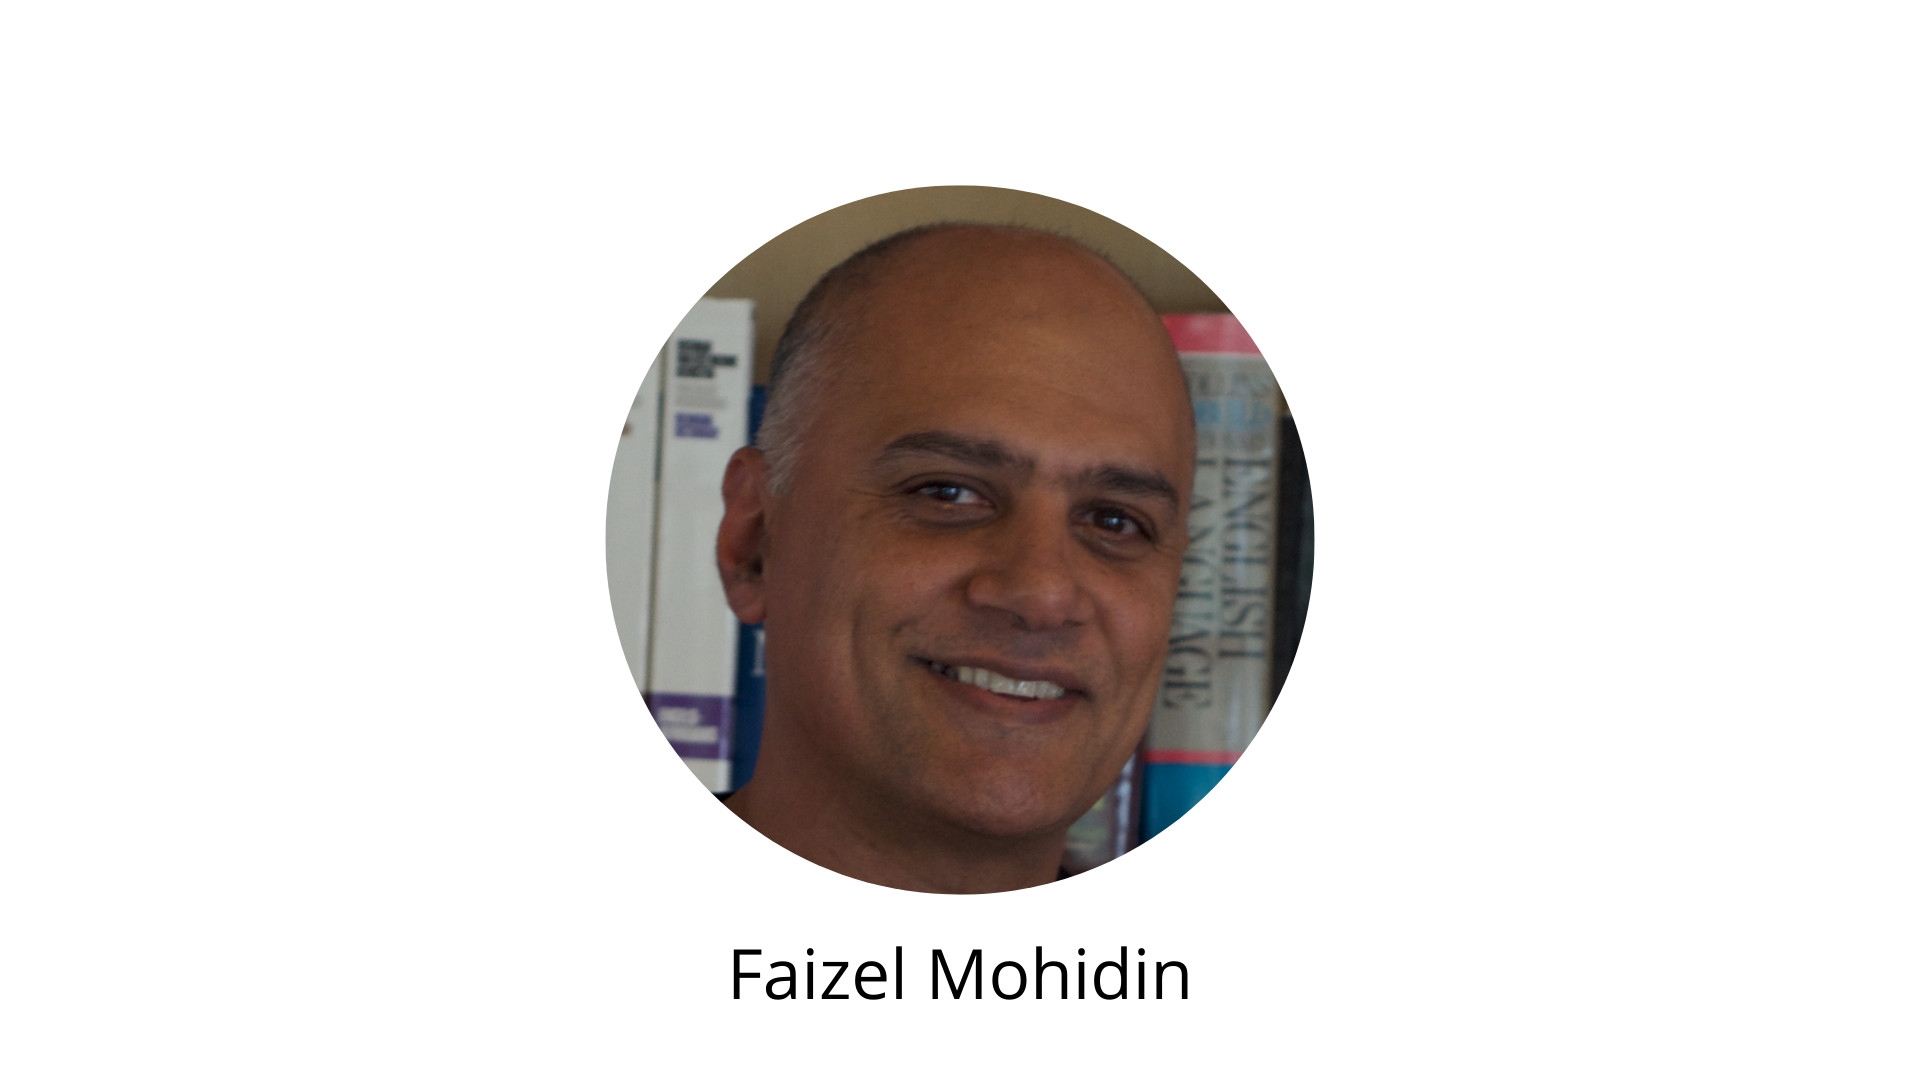 Faizel Mohidin